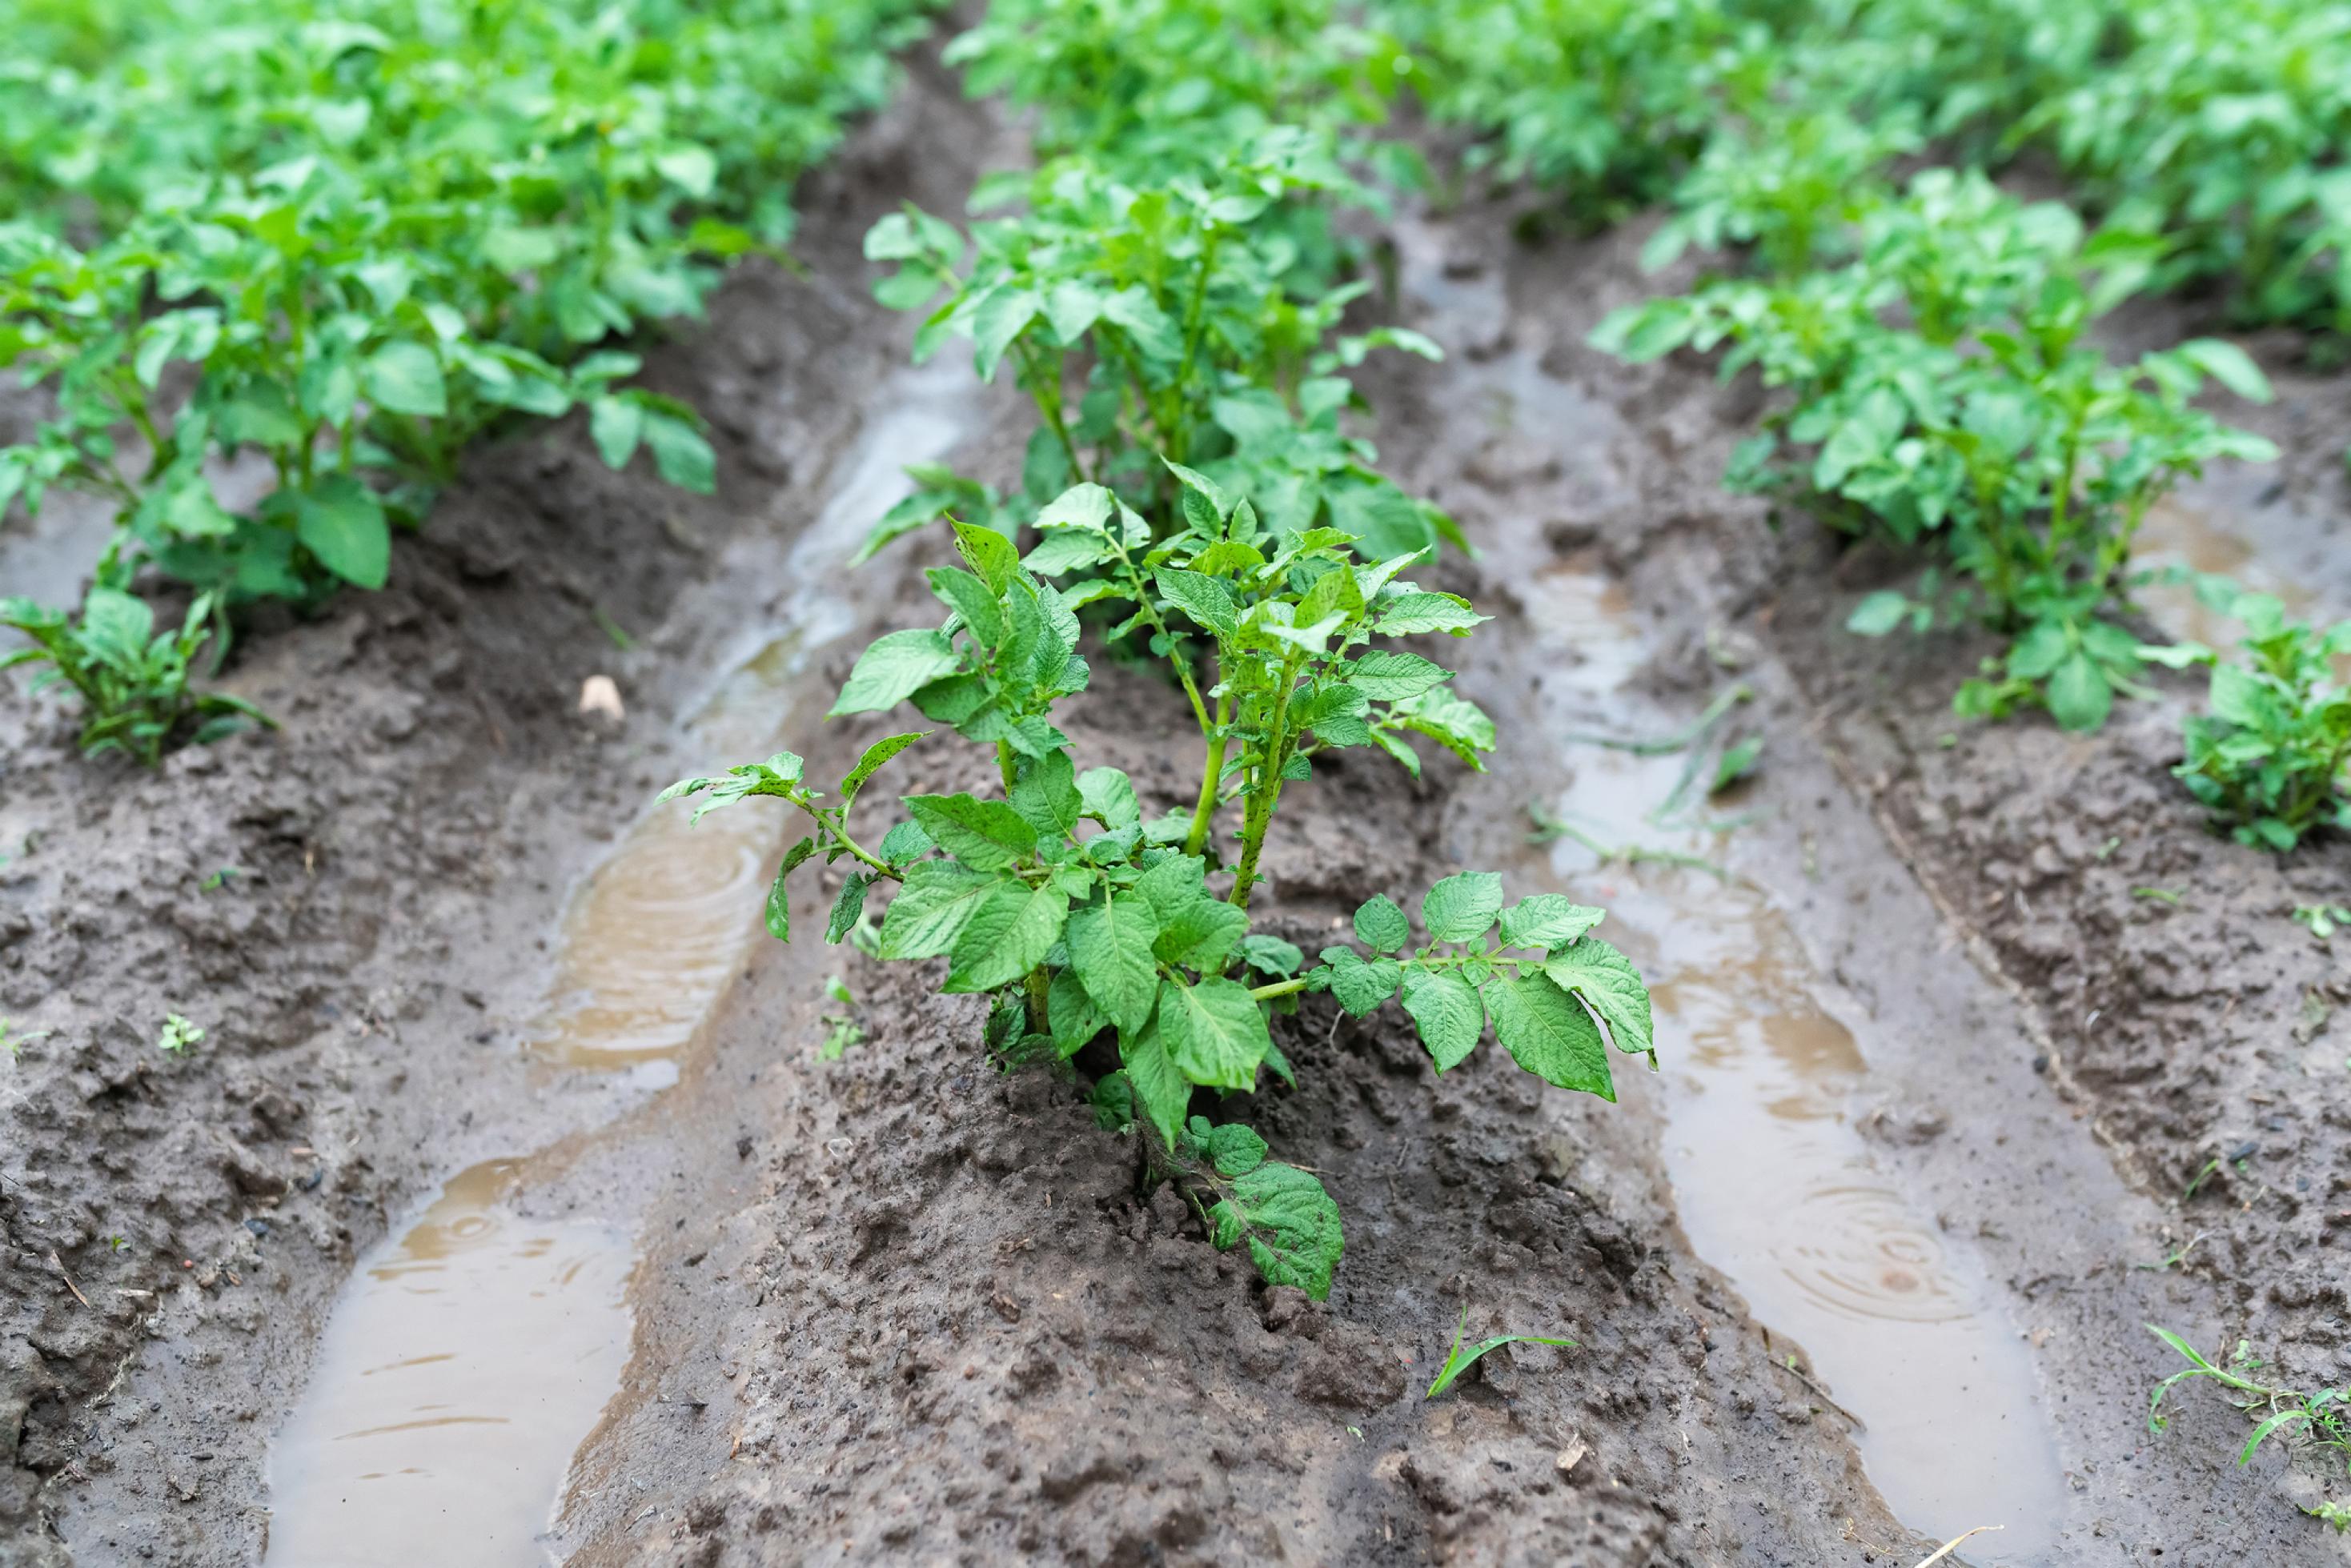 Kartoffelpflanzen in Furchen mit Wasser nach starkem Regen.